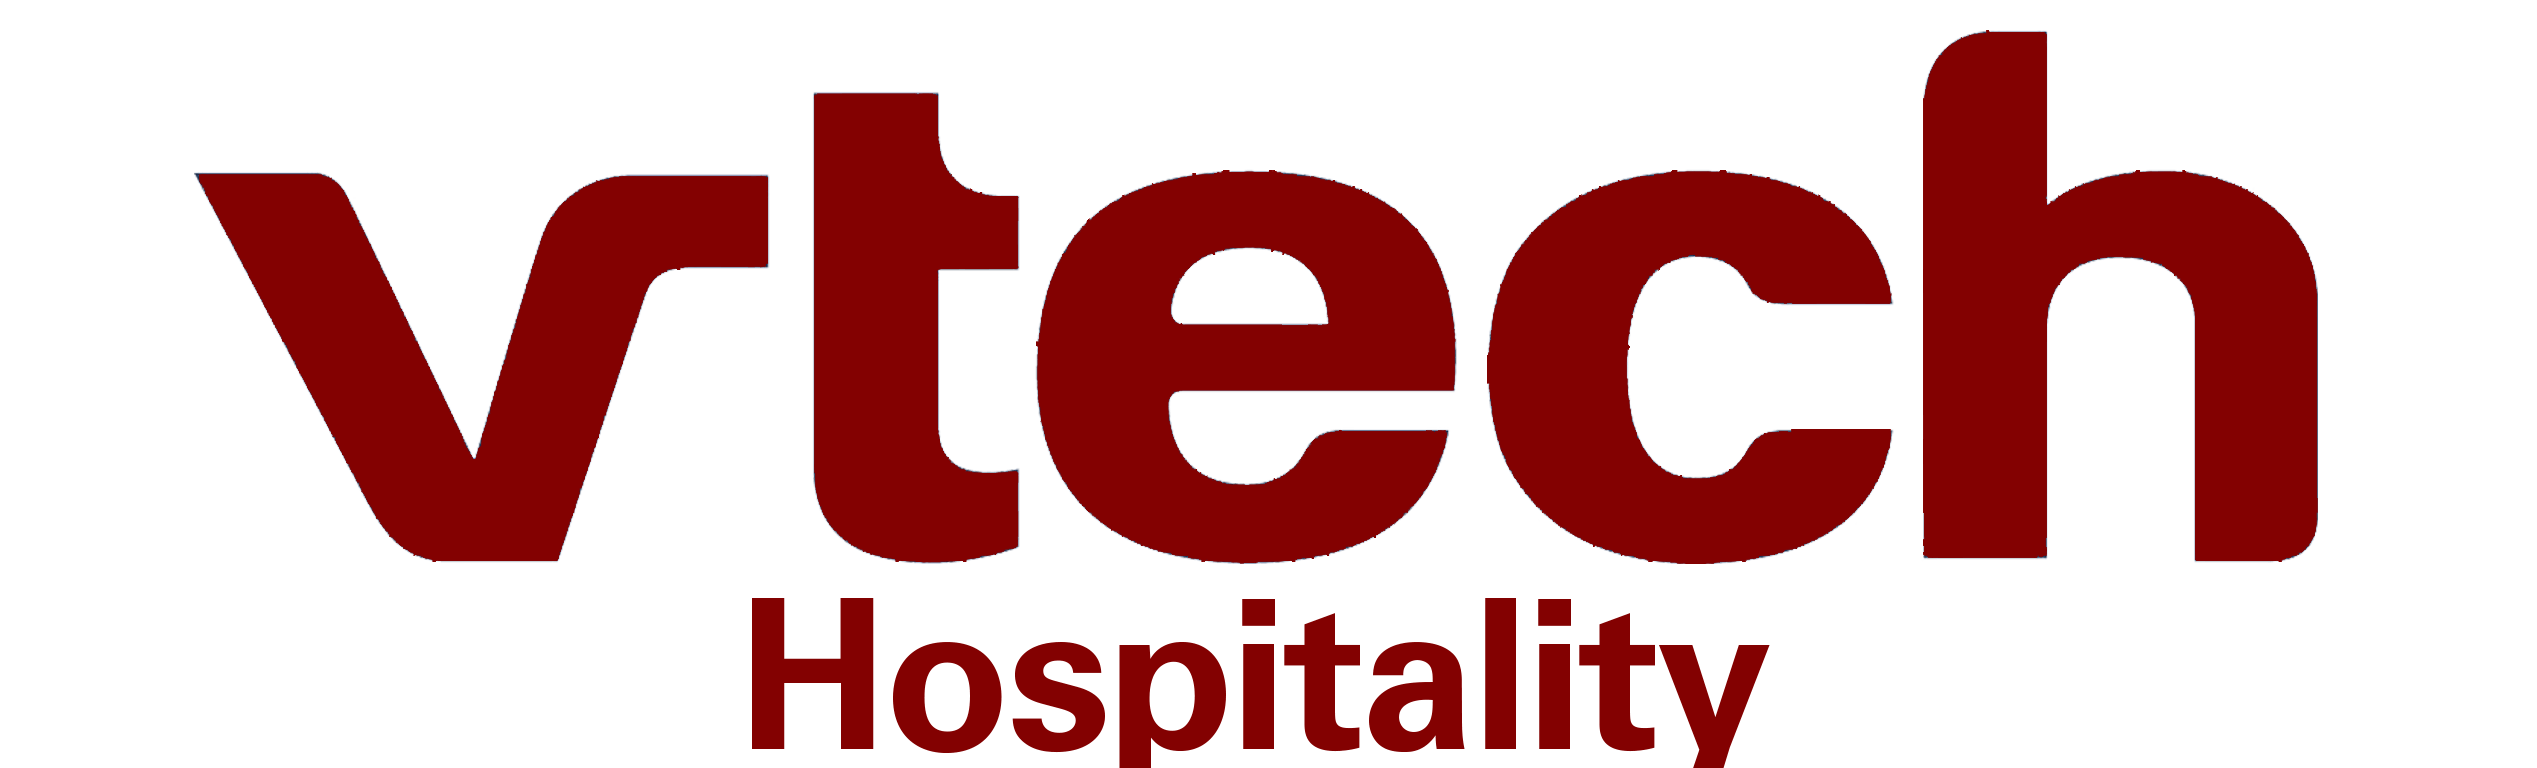 Red VTech Logo - Tekxpertise Vtech hospitality